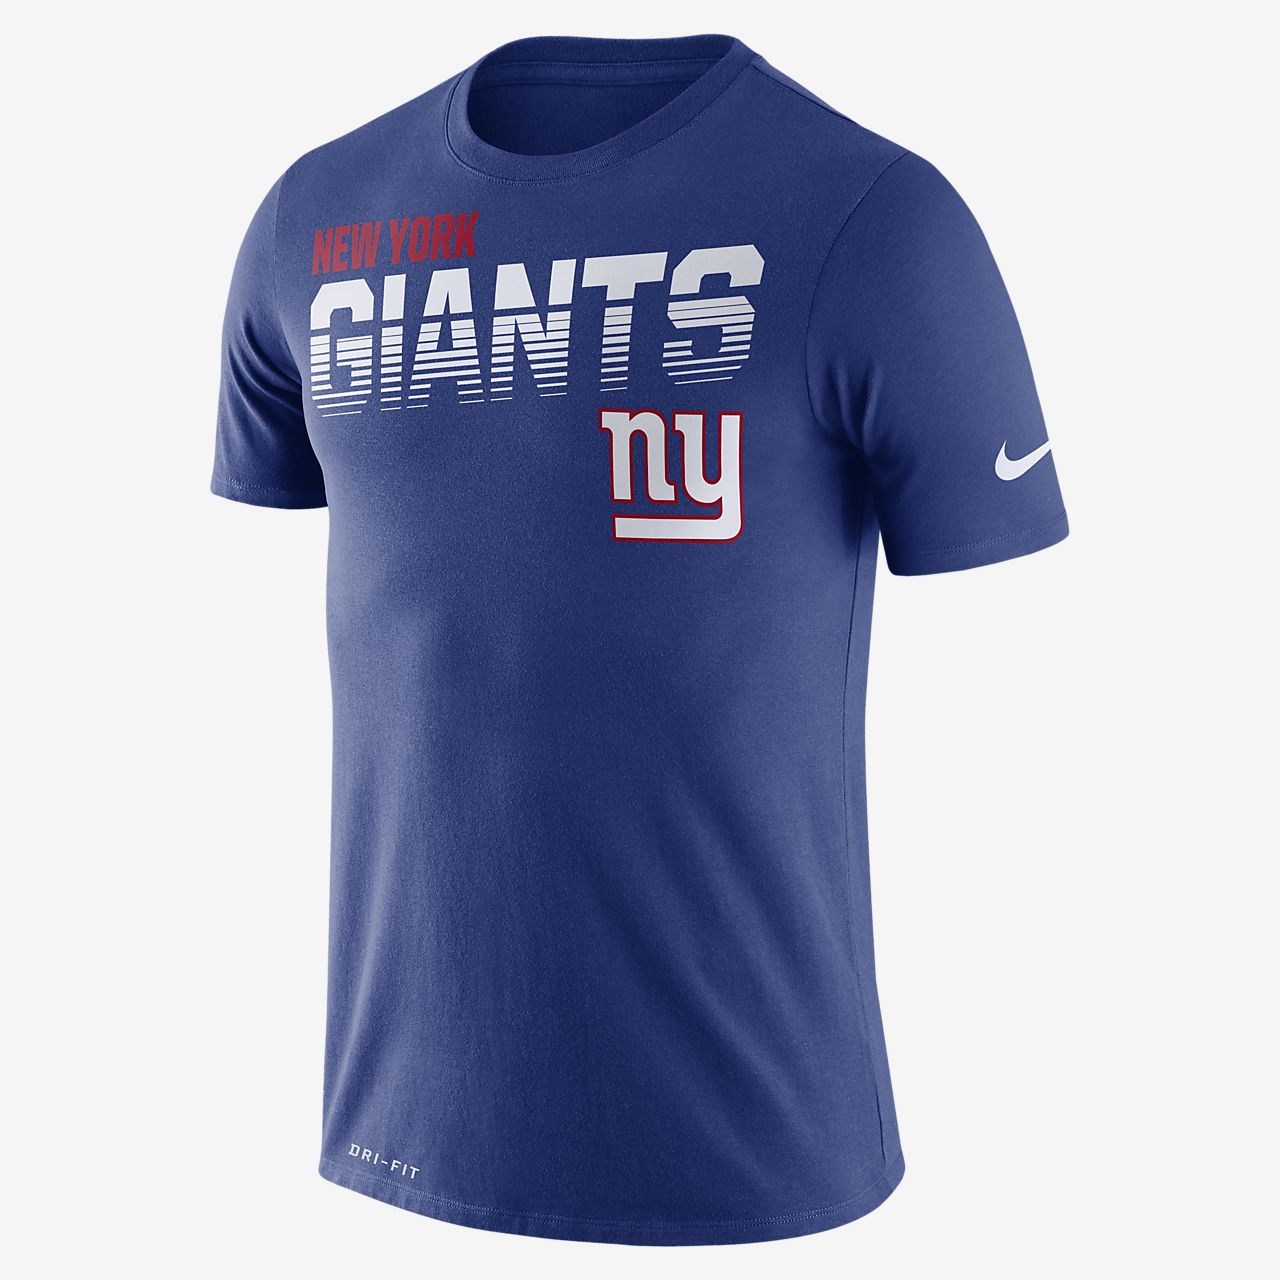 NFL Giants) Men's Short-Sleeve T-Shirt 